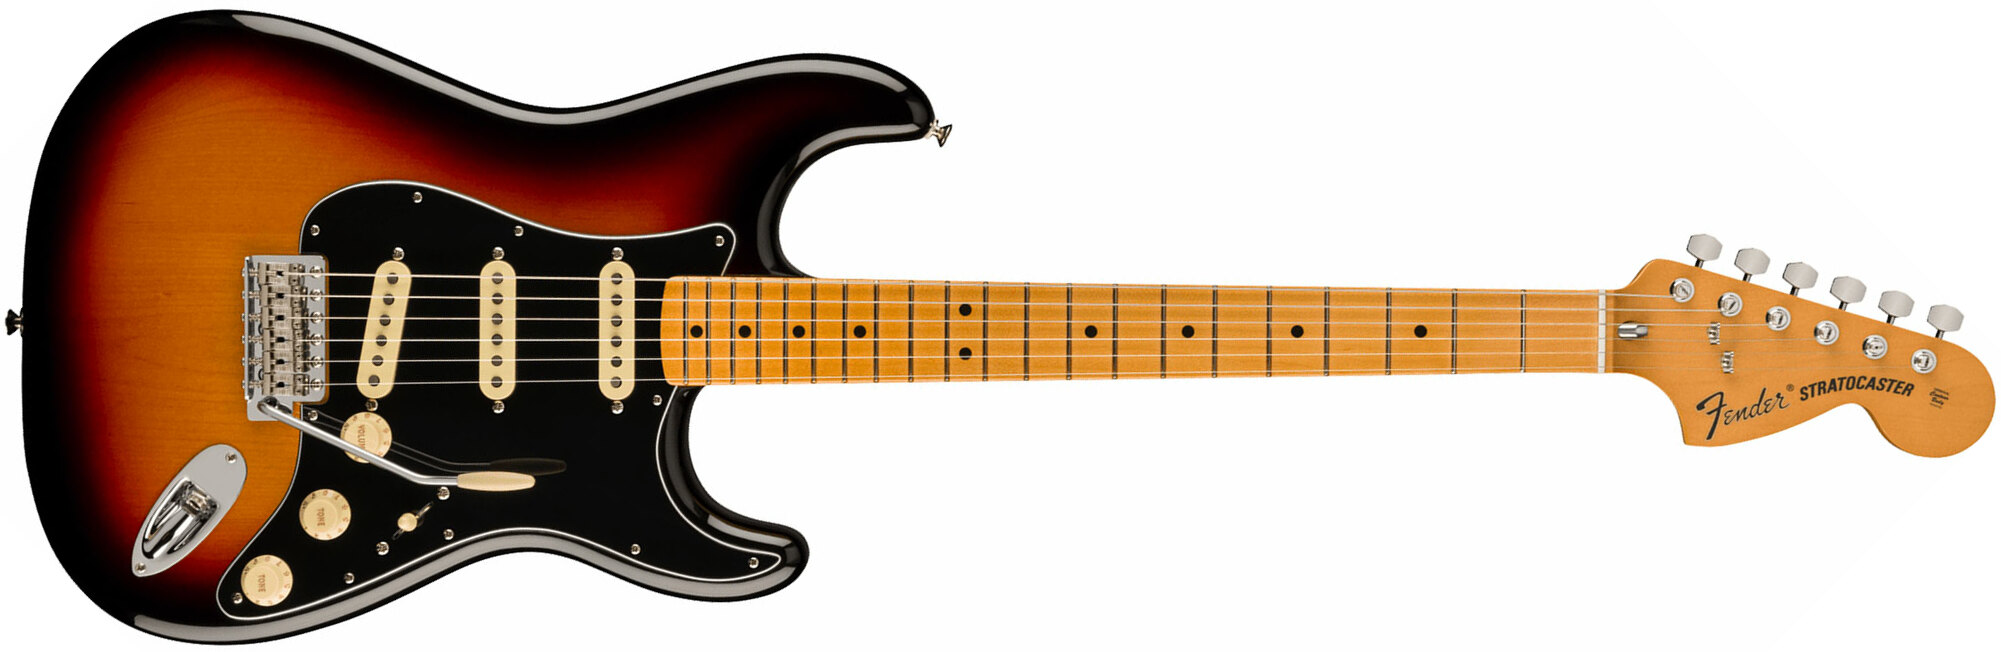 Fender Strat 70s Vintera 2 Mex 3s Trem Mn - 3-color Sunburst - Guitarra eléctrica con forma de str. - Main picture